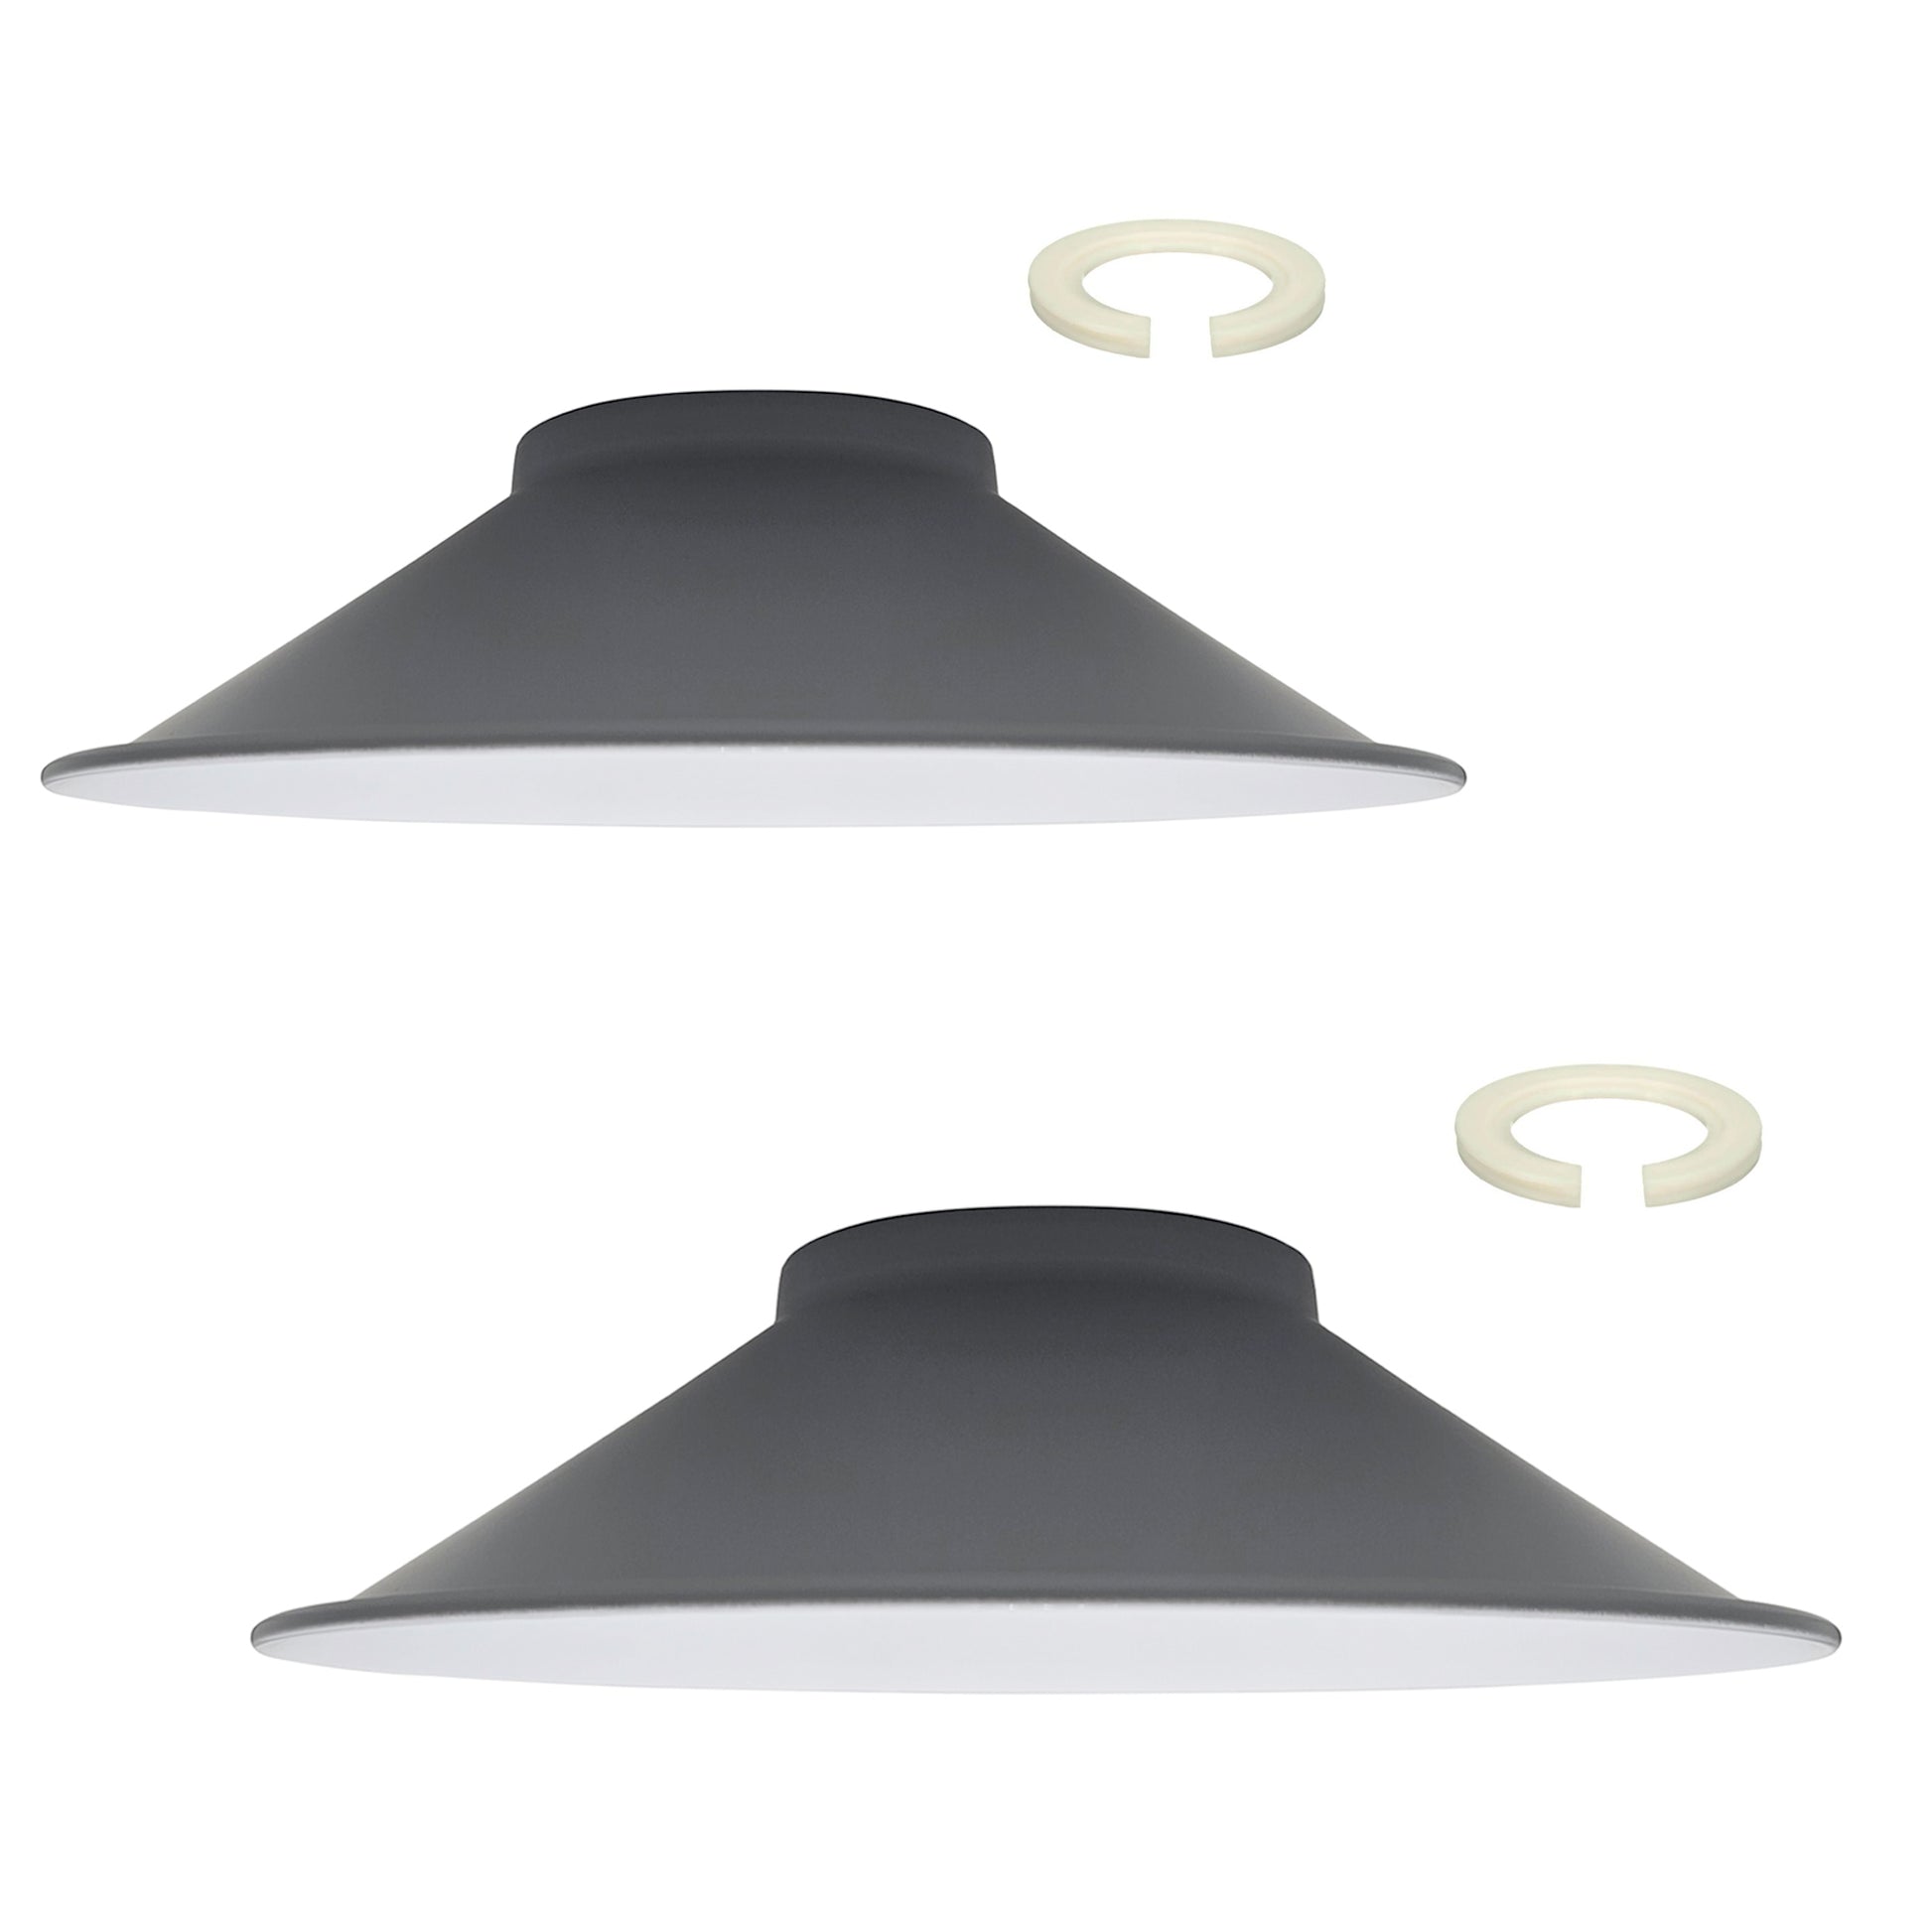 lampshades grey image